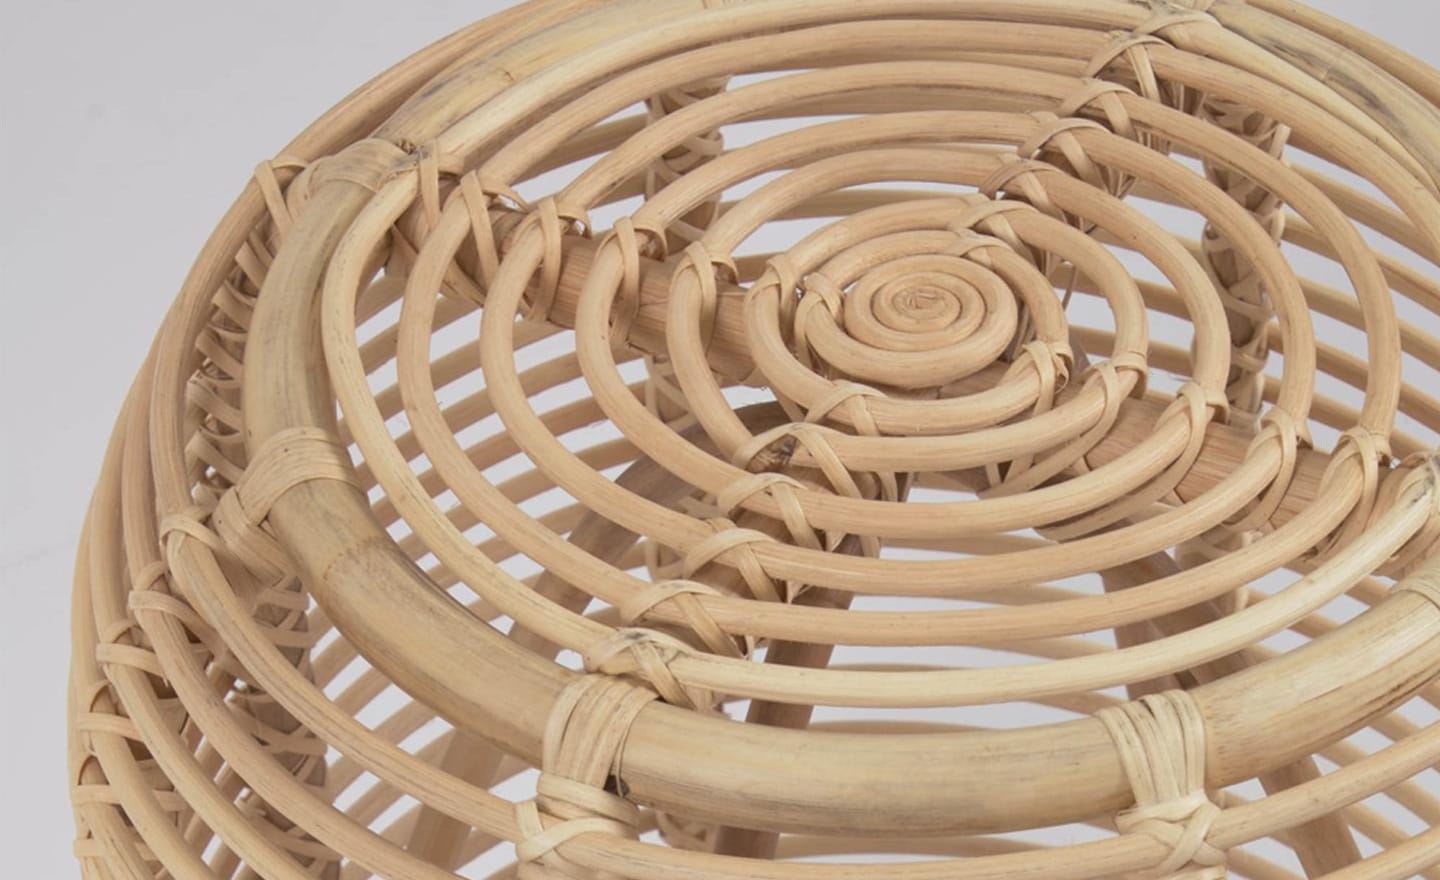 Mesa de Apoio Kohana feita em ratán com acabamento natural. Peça artesanal e exclusiva, com tonalidades e texturas próprias.